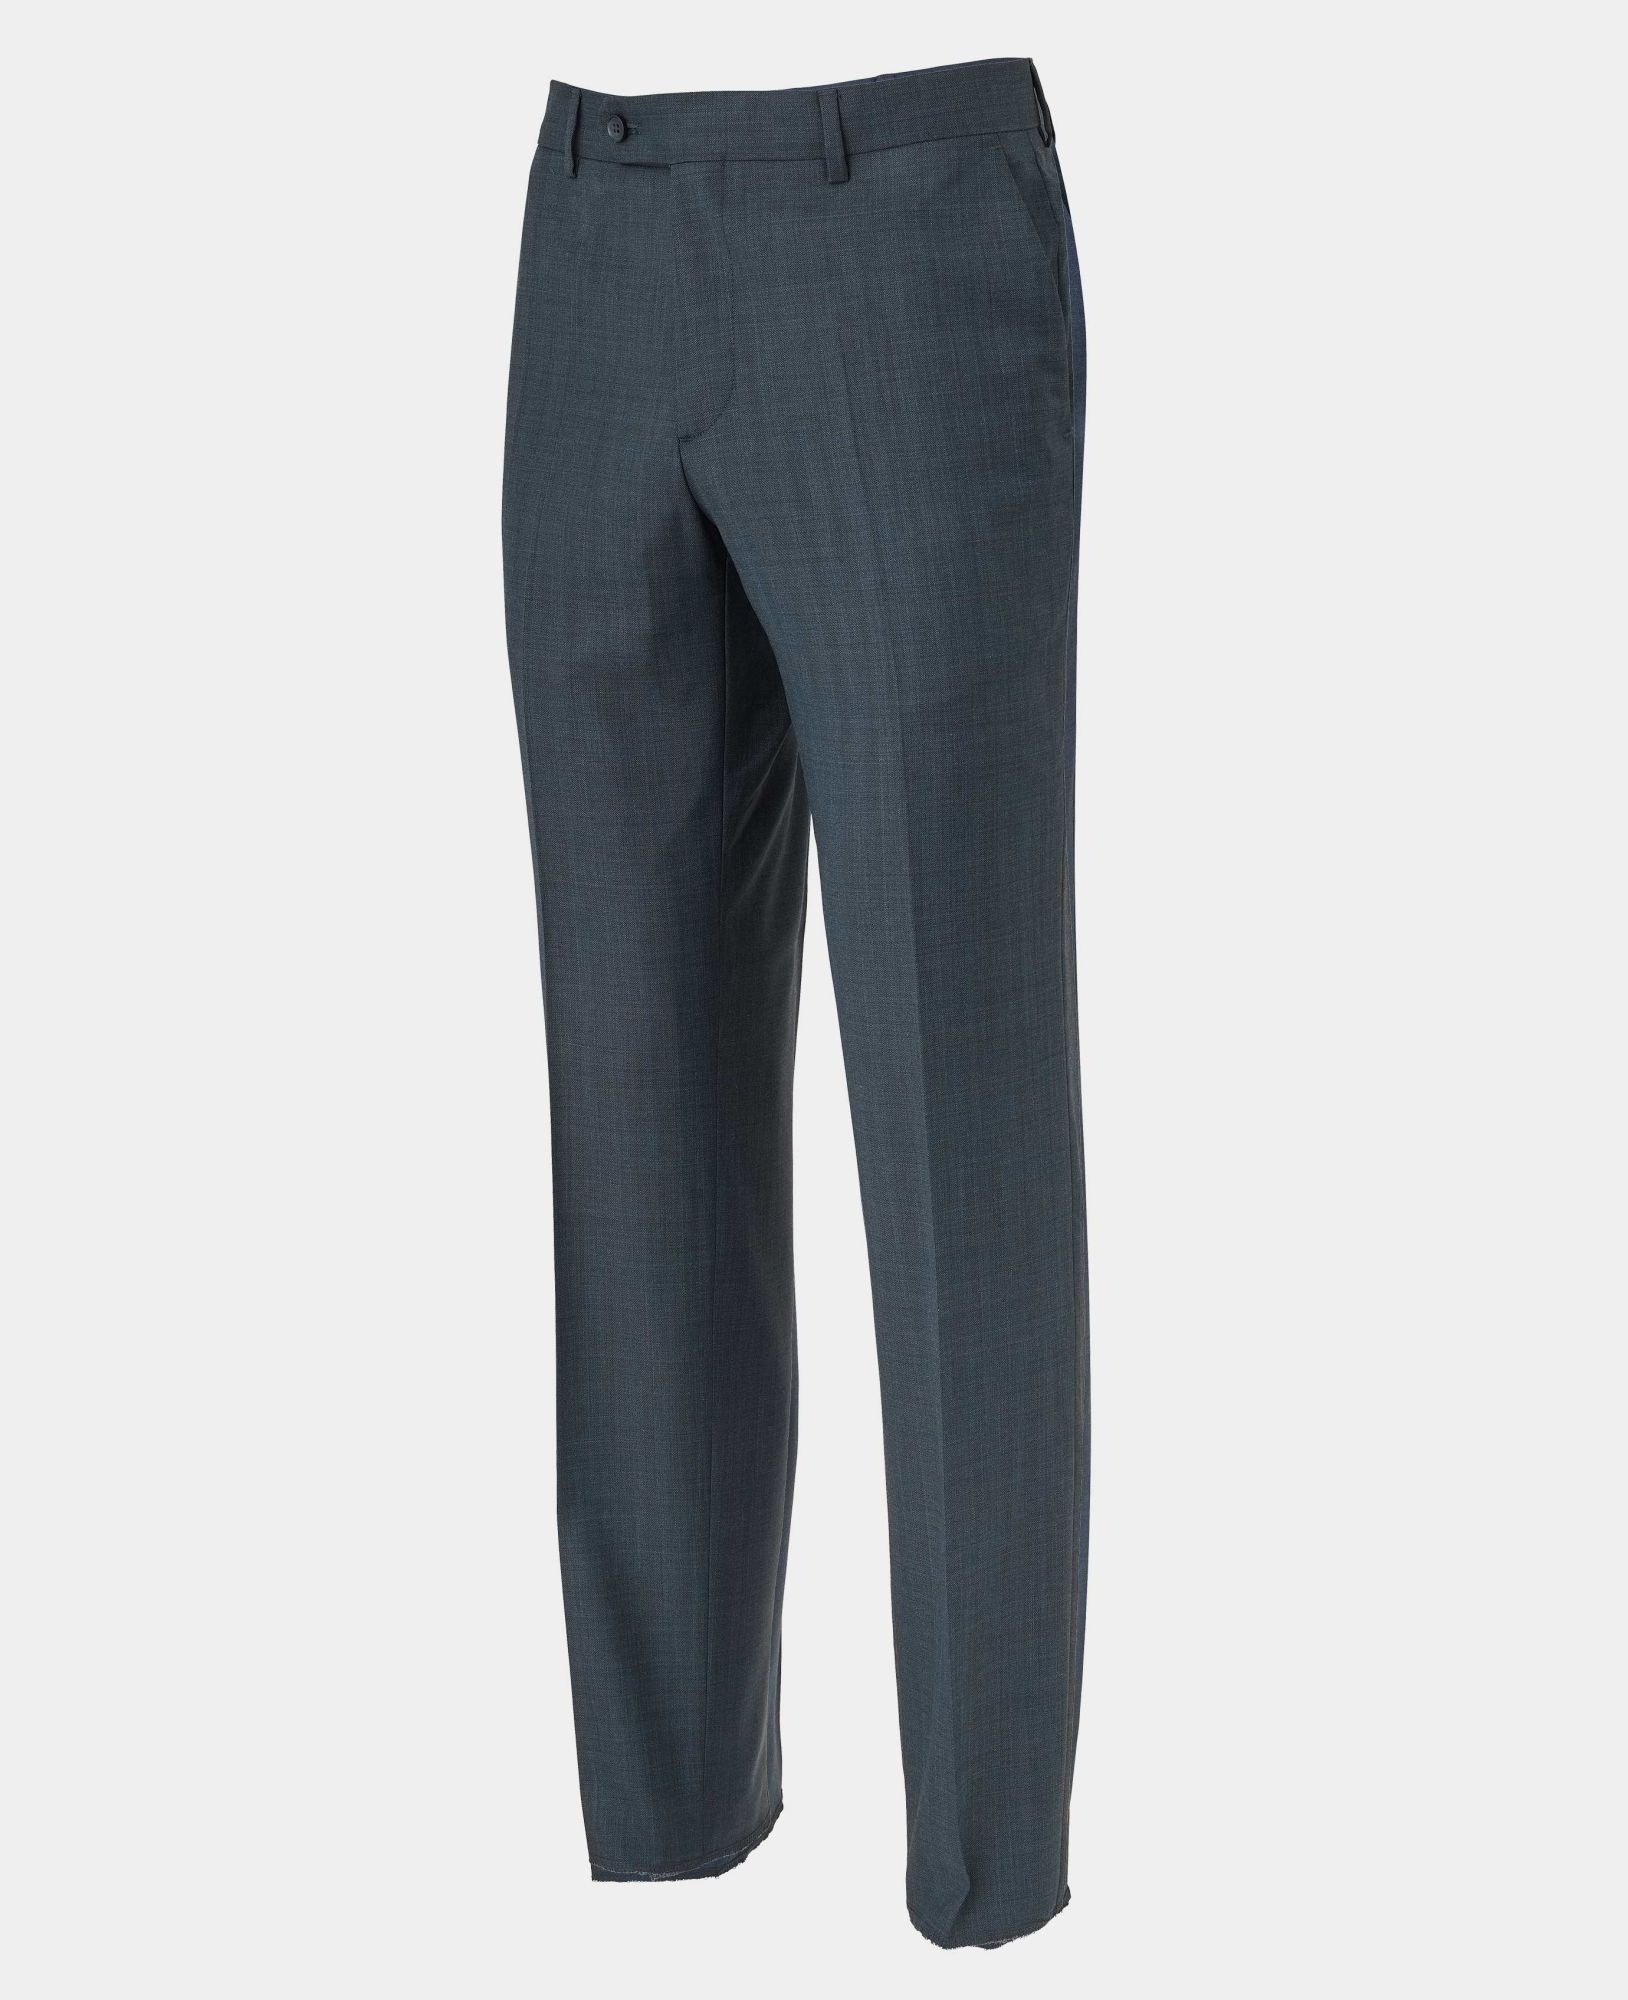 Navy Herringbone Wool-Blend Suit Trousers 36